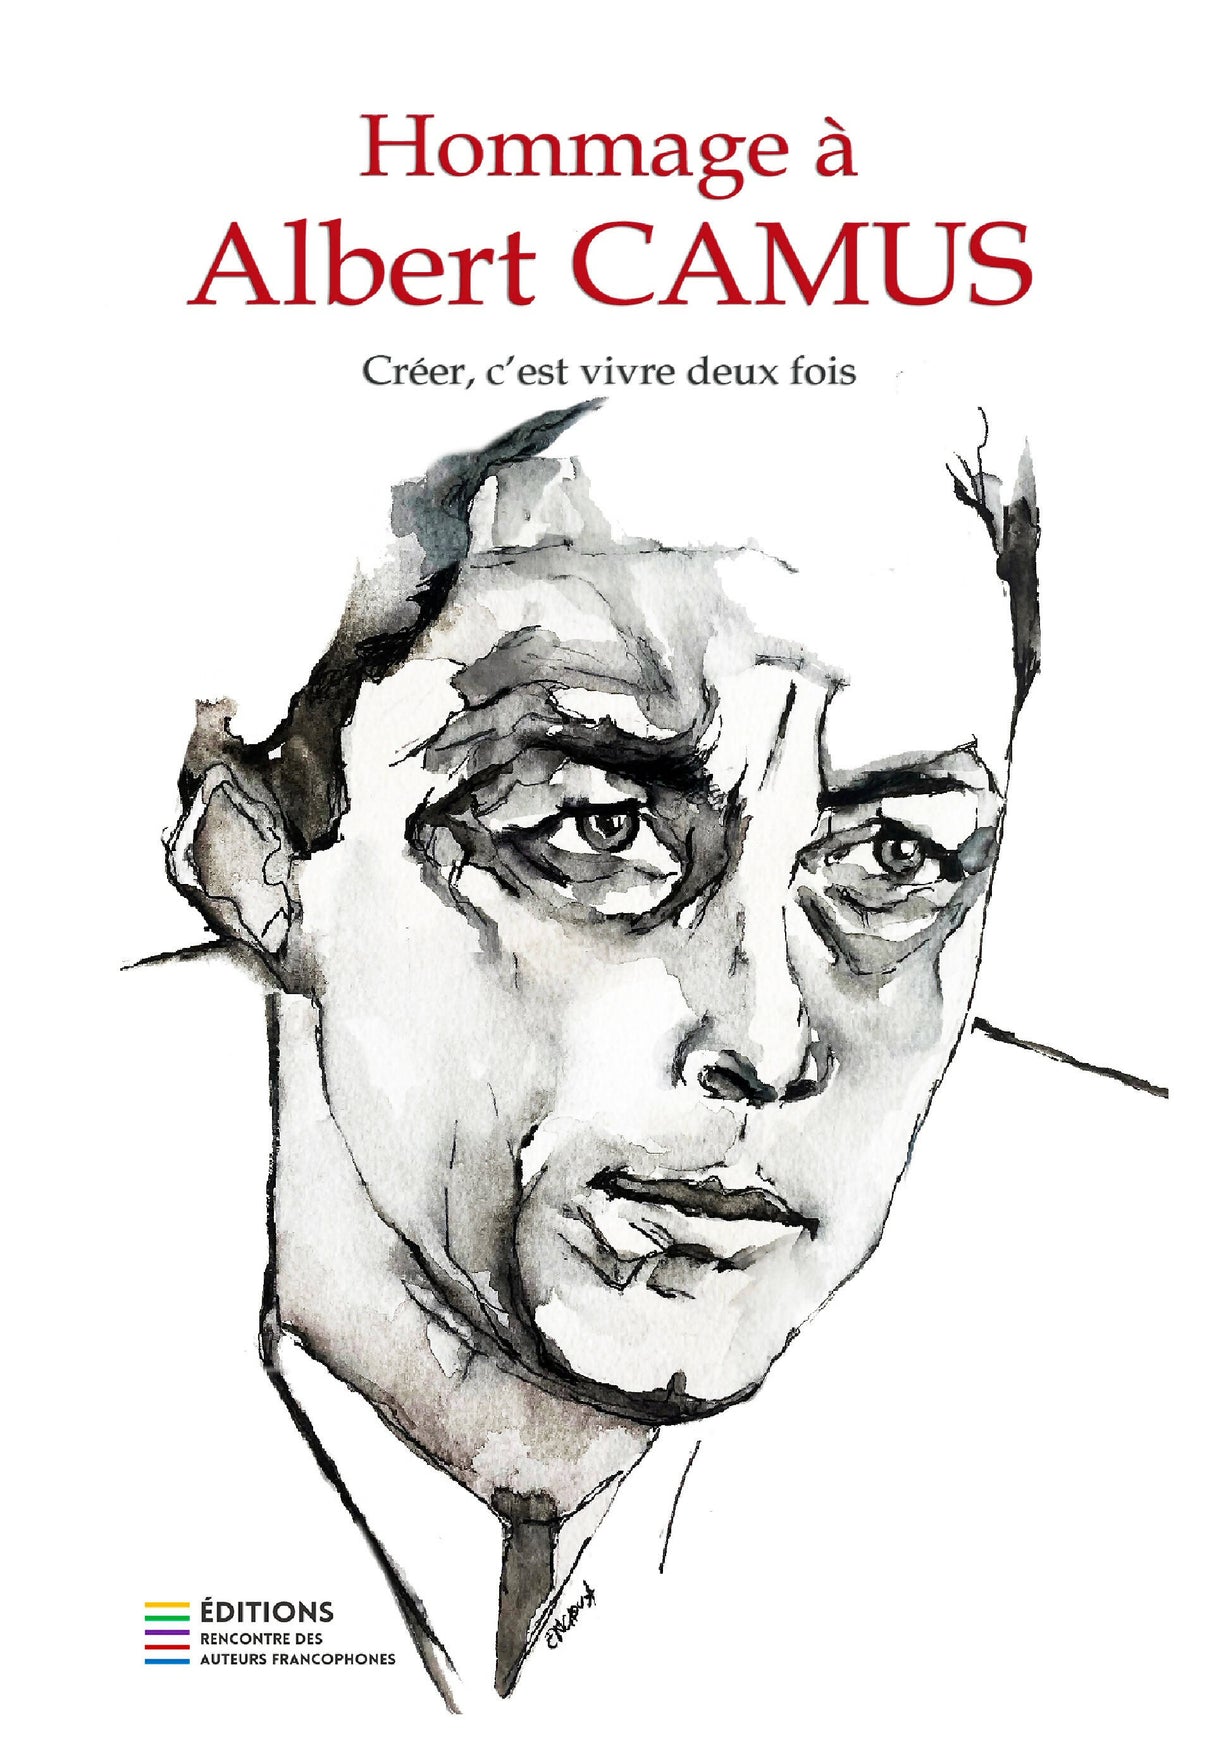 HOMMAGE À ALBERT CAMUS - Créer, c'est vivre deux fois (couleur) - 40 auteurs